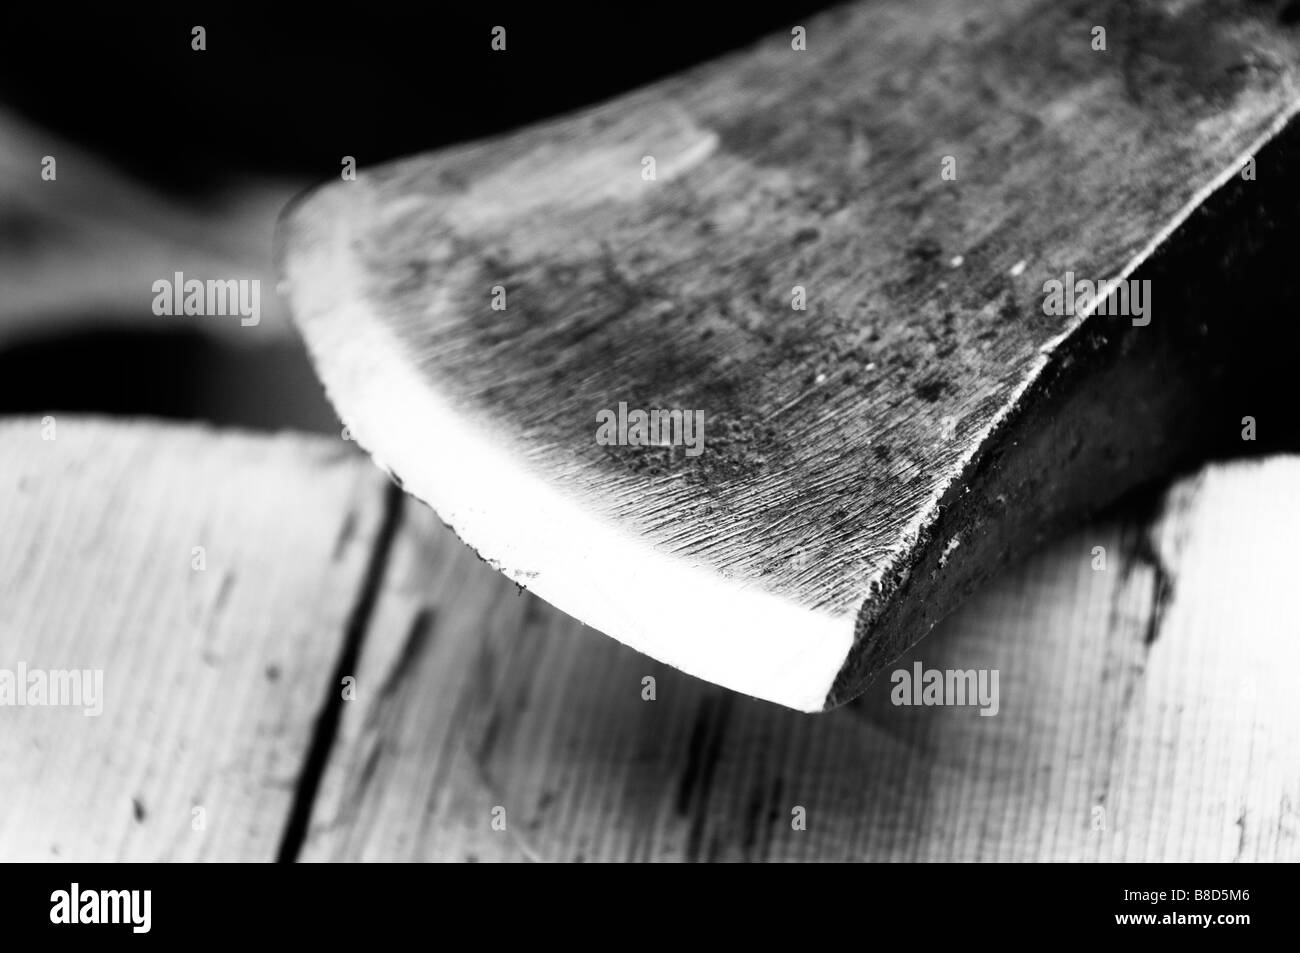 Worn axe head Stock Photo